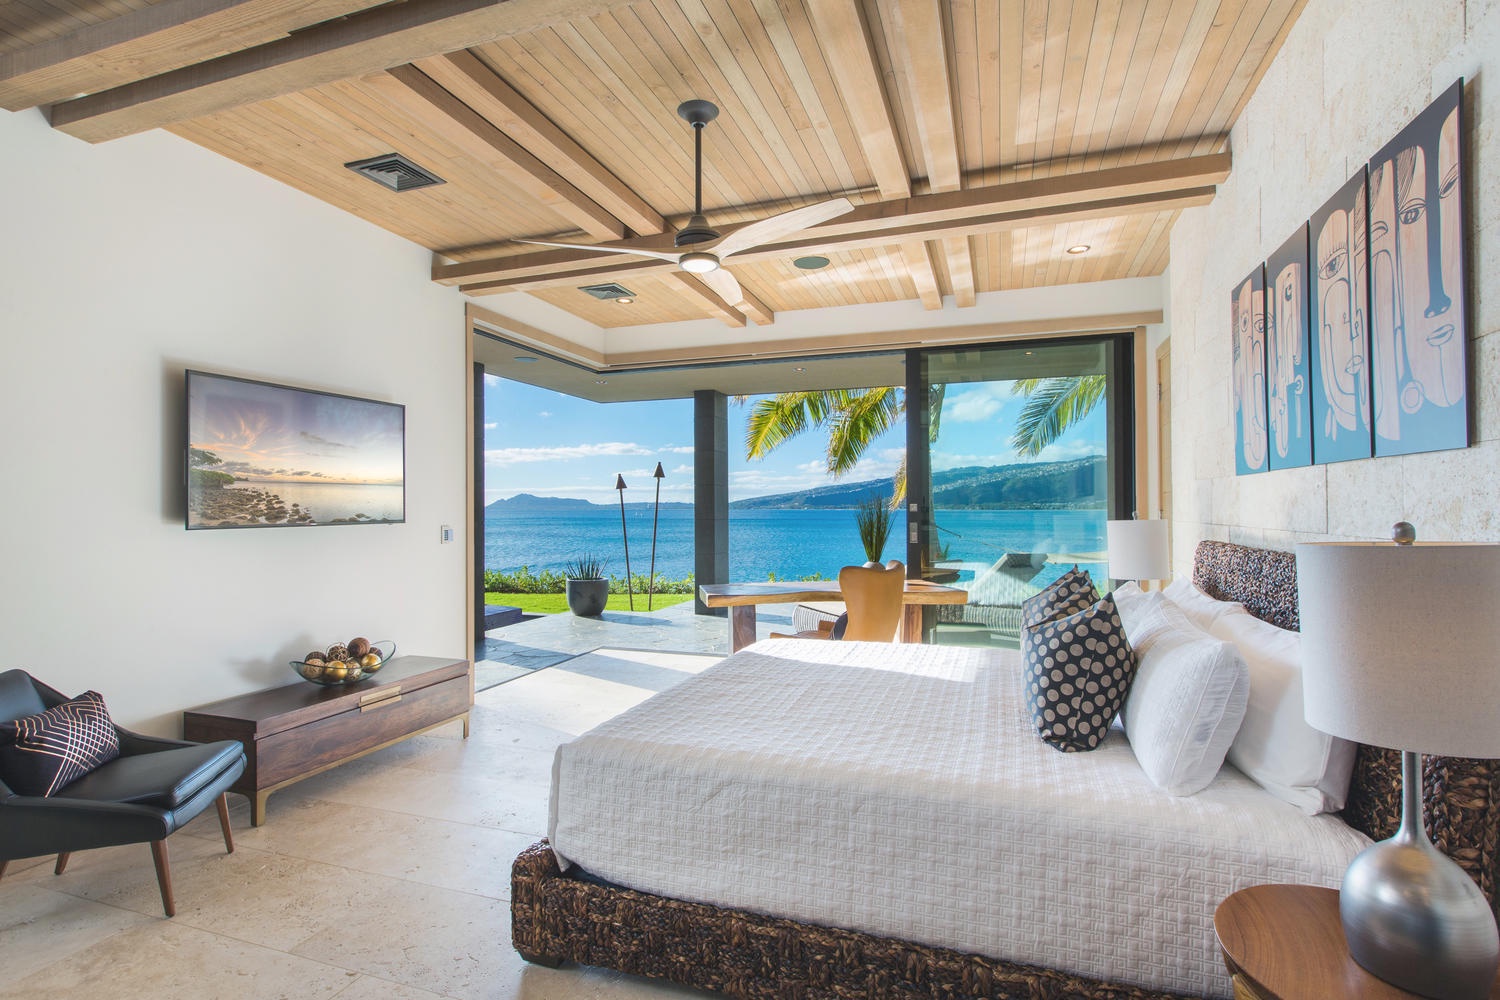 Honolulu Vacation Rentals, Ocean House 4 Bedroom - Downstairs bedroom